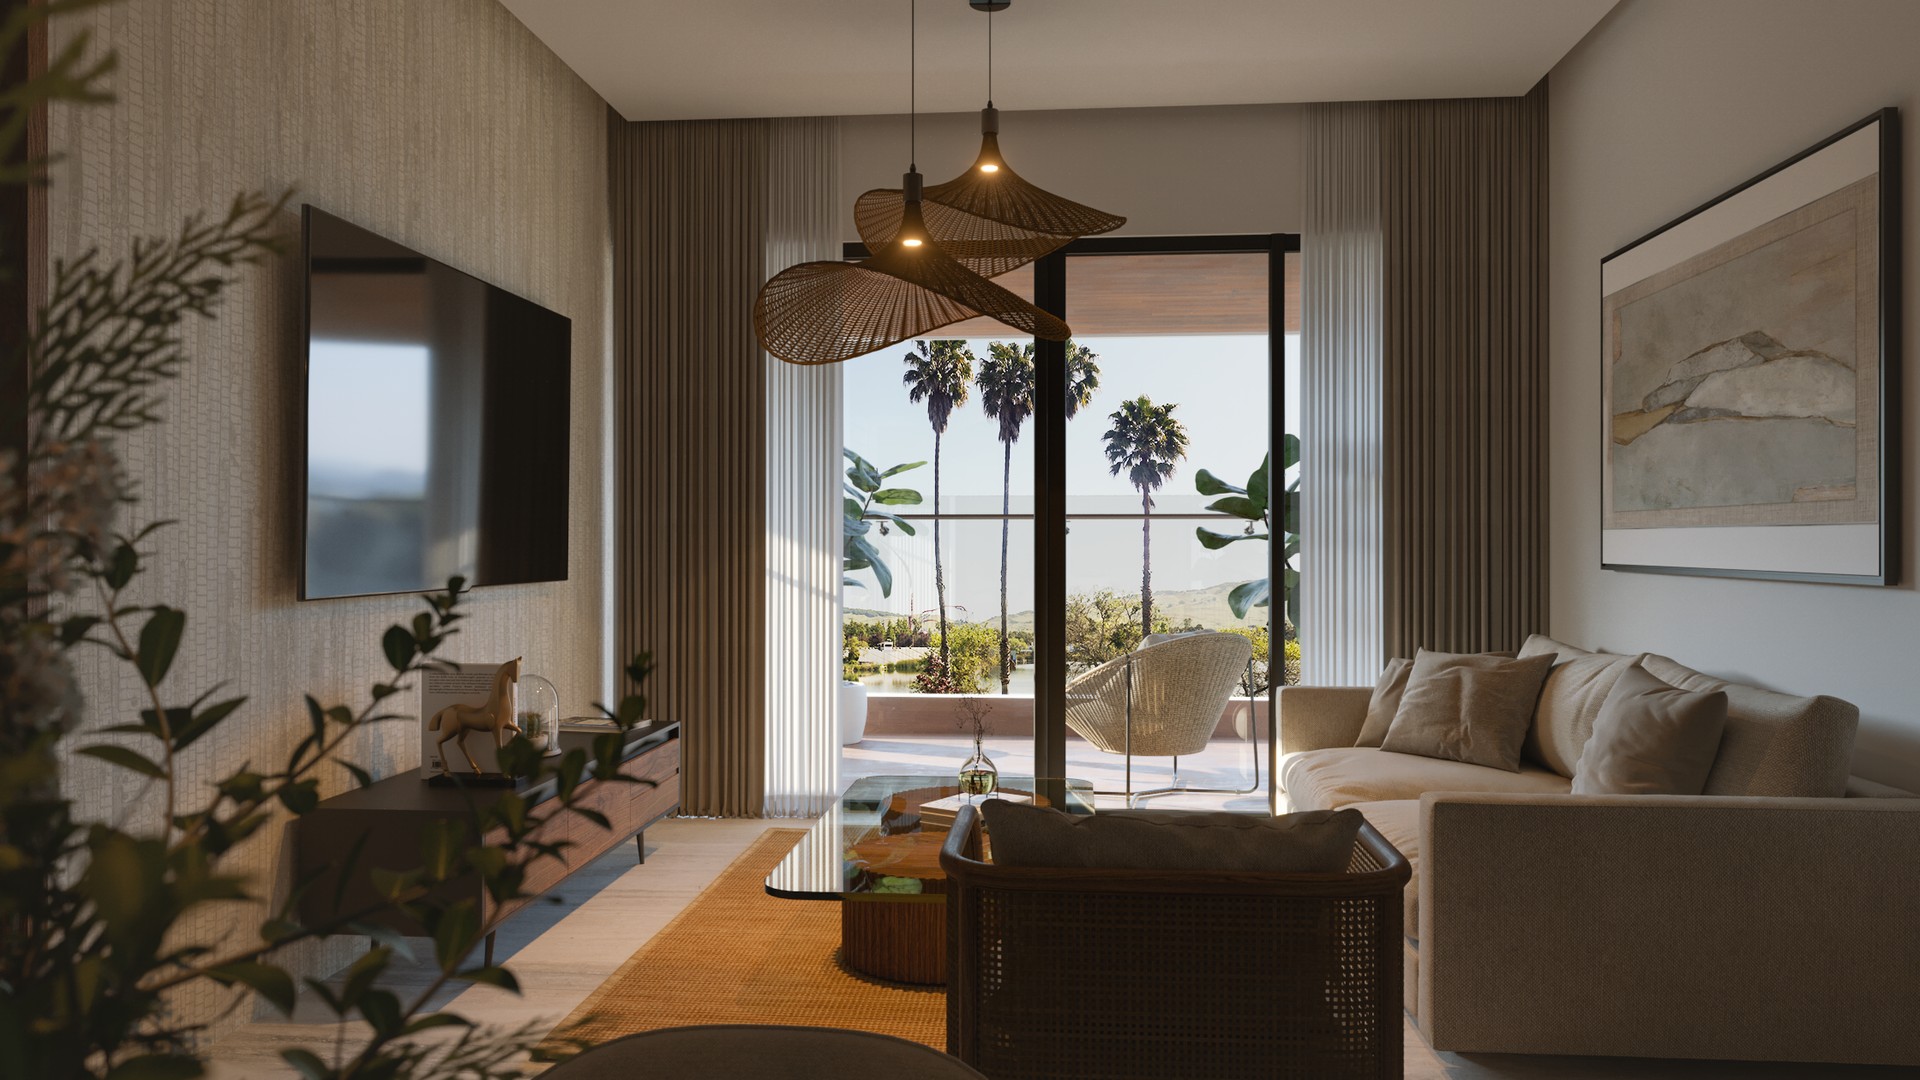 apartamentos - Apartamentos en vista cana ideal para su retiro o renta por airbnb con playa  8